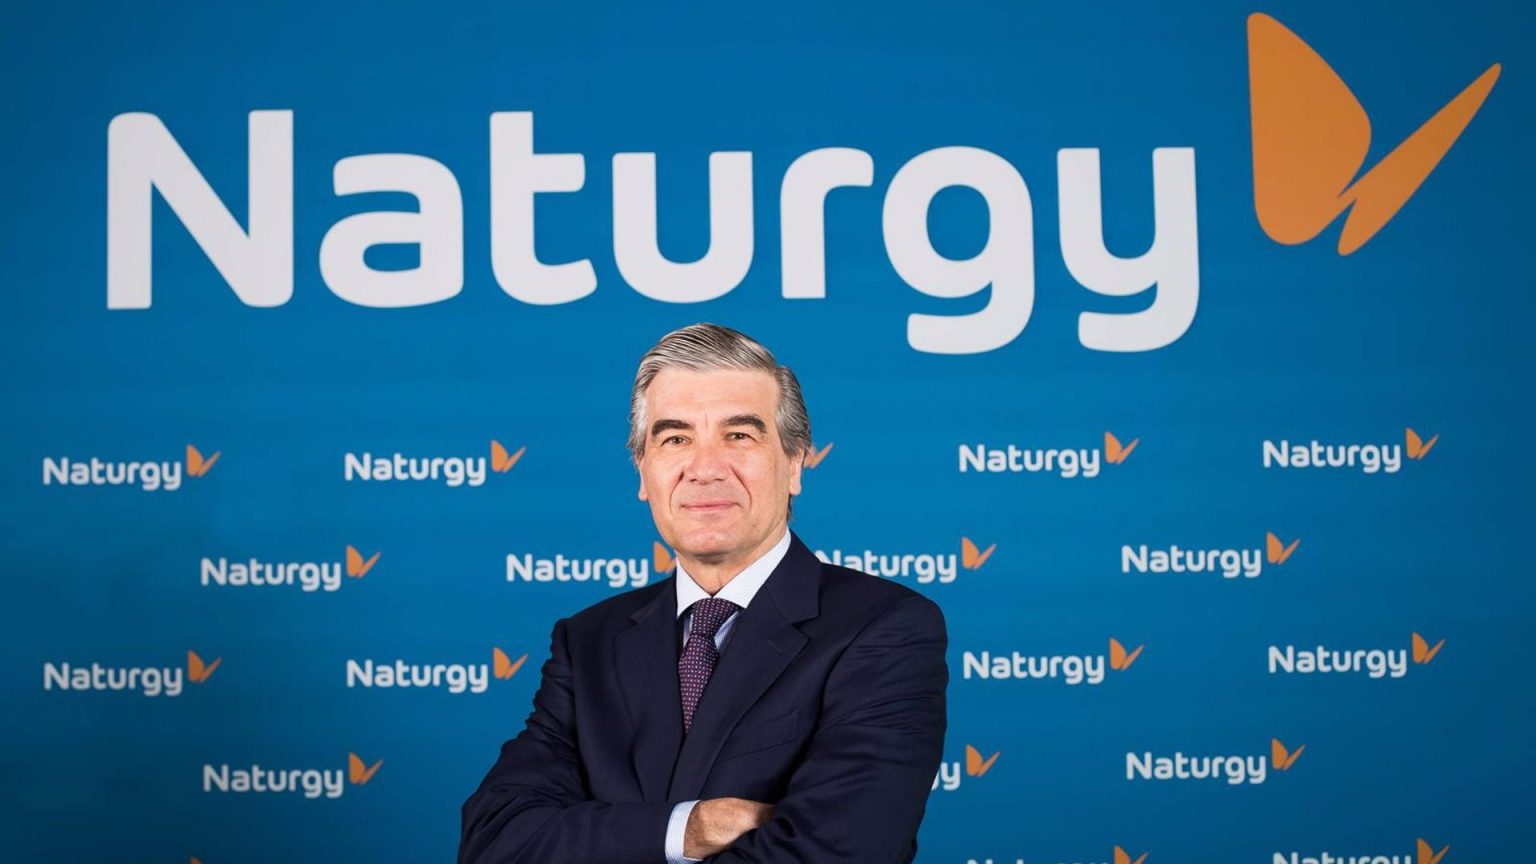 Naturgy y su presidente, galardonados en los Platts Global Energy Awards